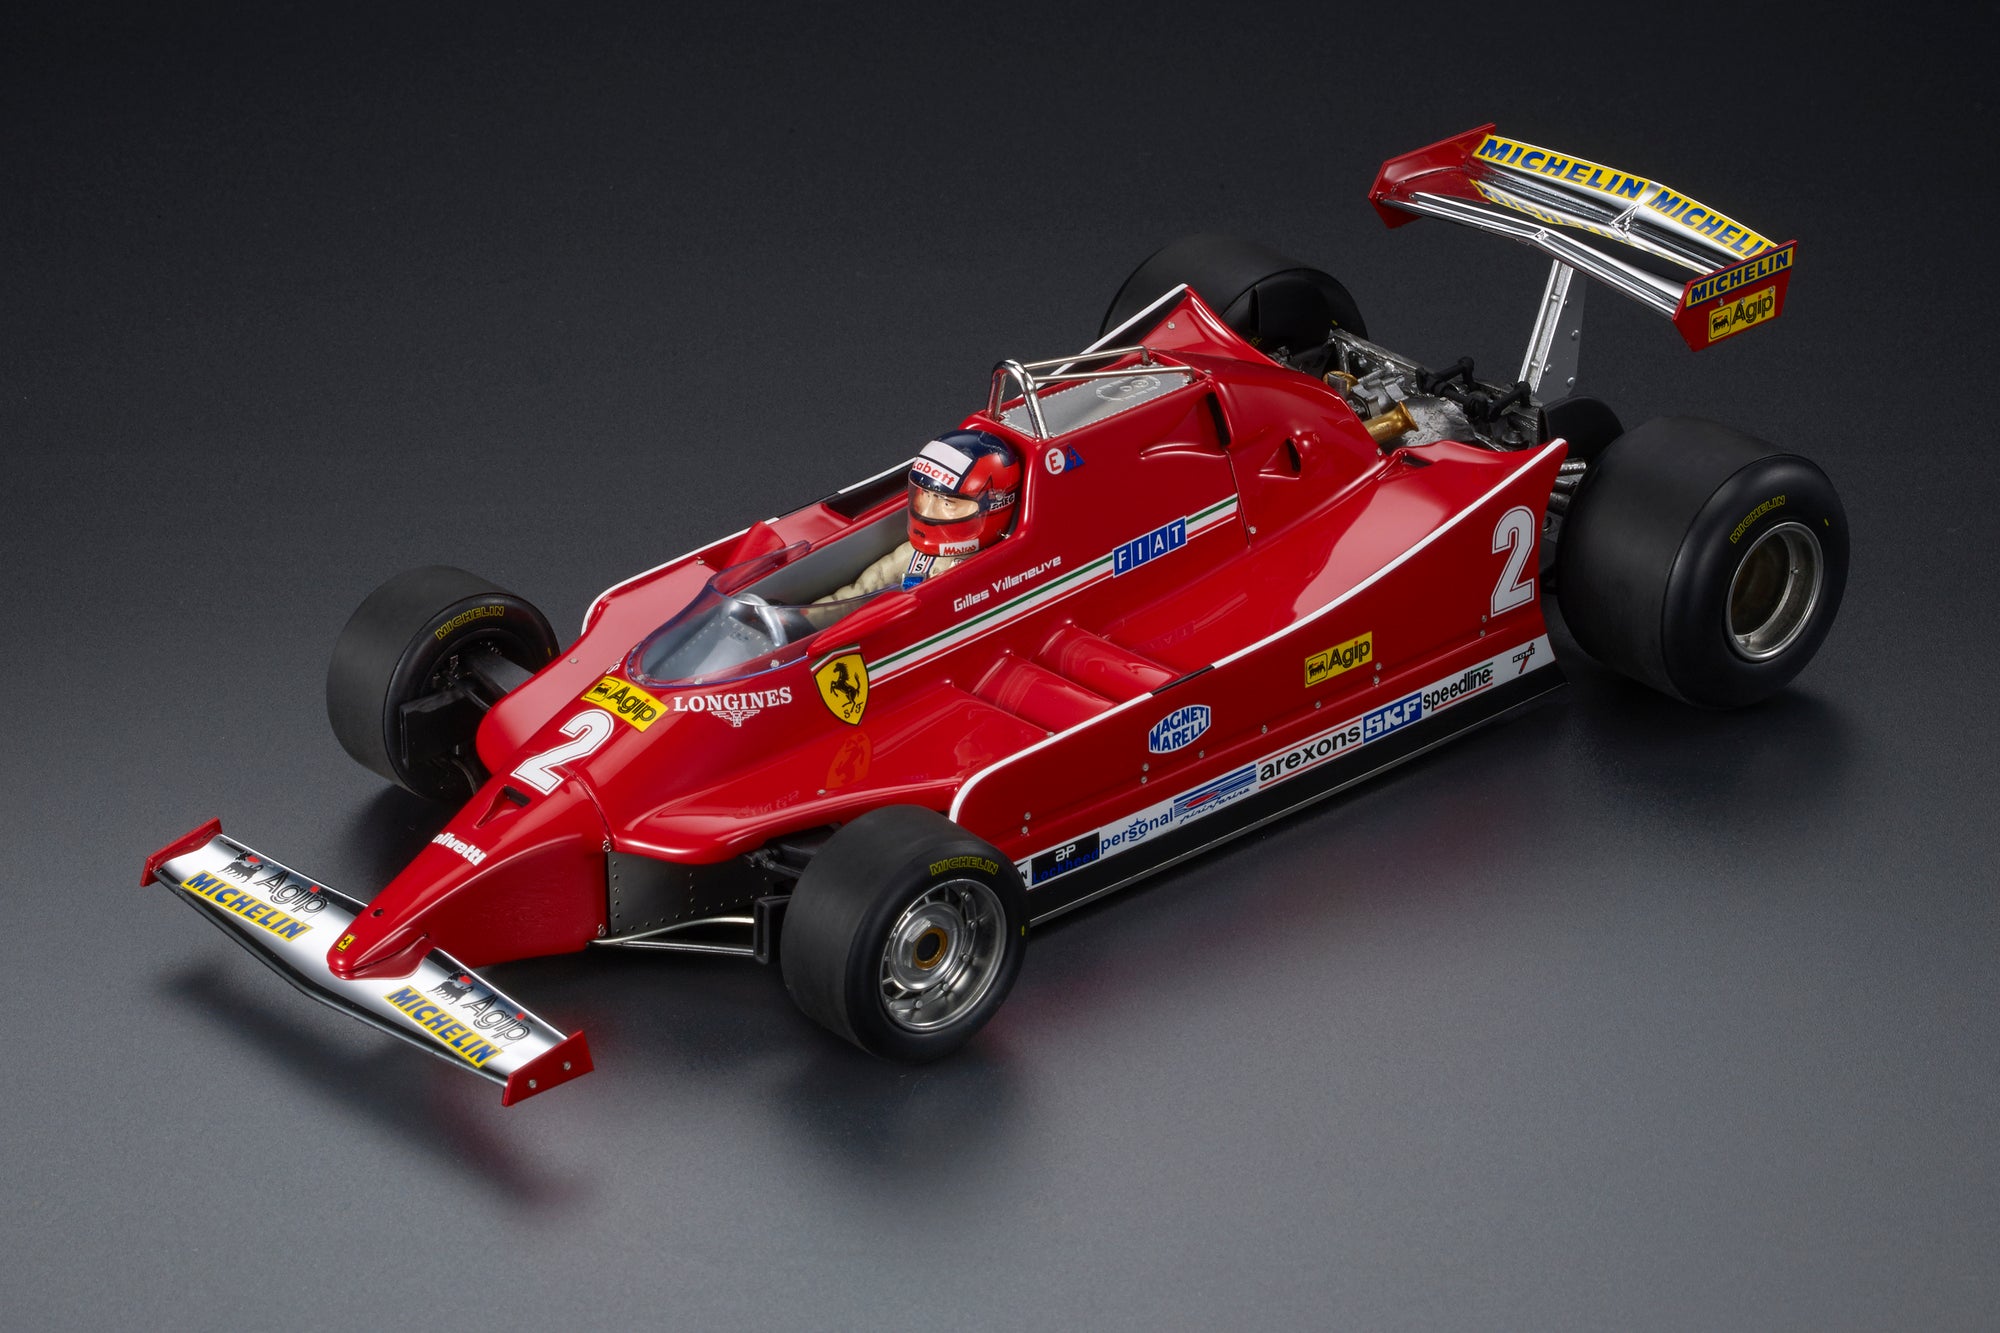 Ferrari - F1 126C n.2 (1980) 1:18 - Gilles Villeneuve - Italy GP 